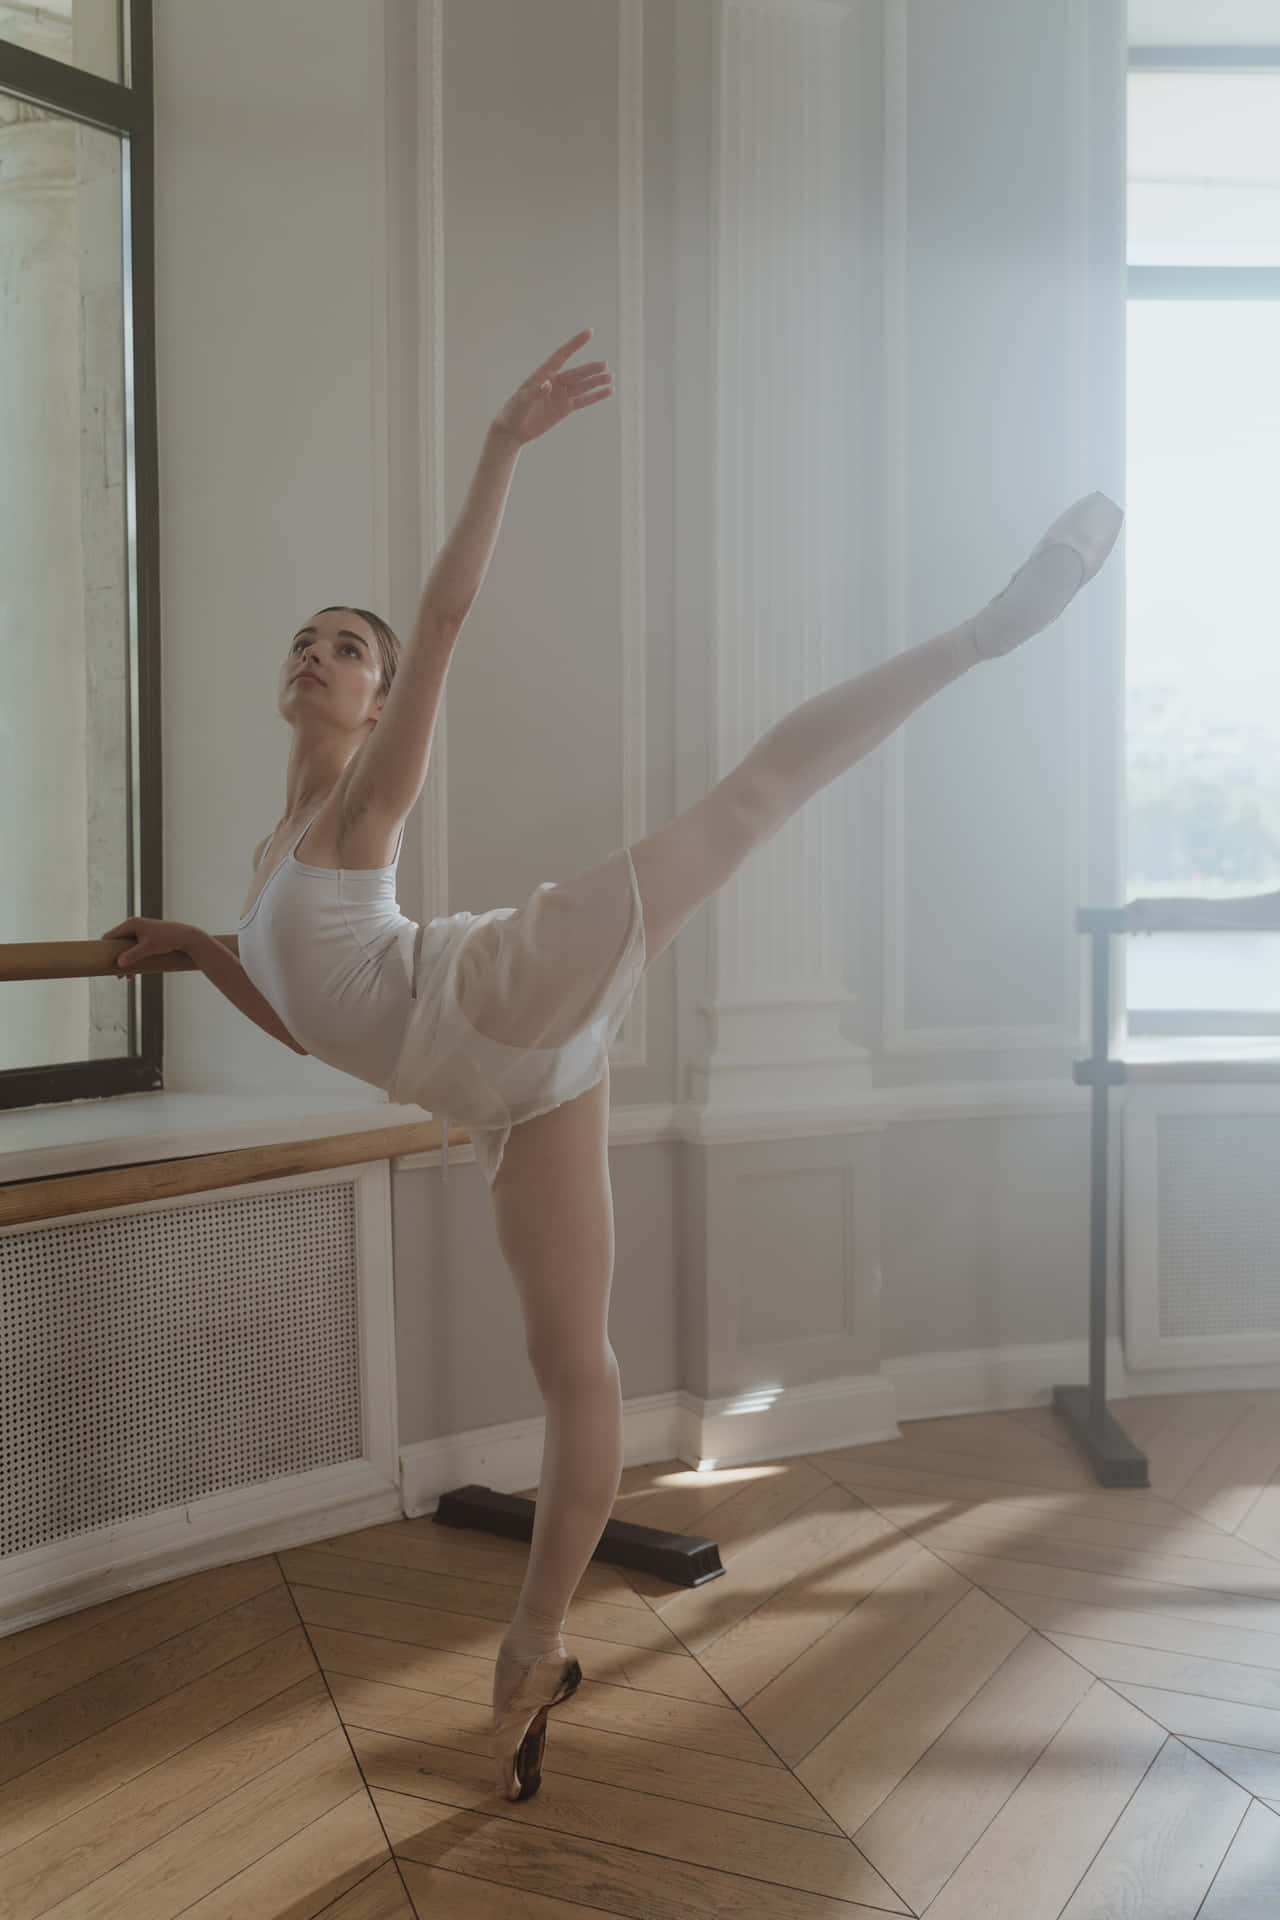 En ung balletdanser øver sig i et værelse tæt på et vindue Wallpaper